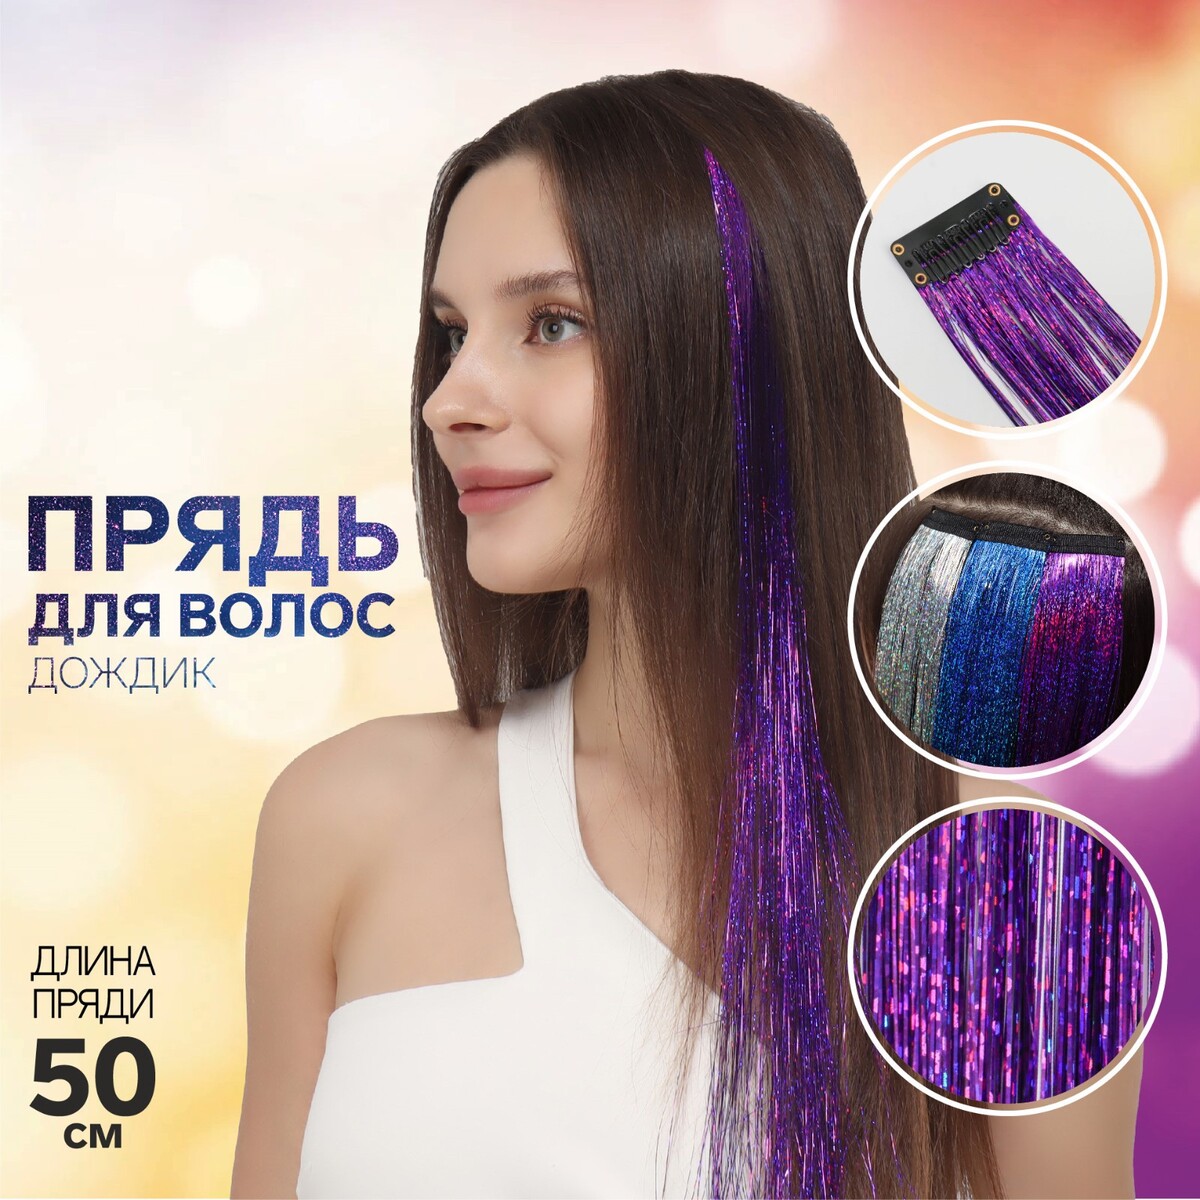 Прядь для волос, дождик, на заколке, 50 см, цвет фиолетовый пилинг эпилятор ластик для удаления волос фиолетовый